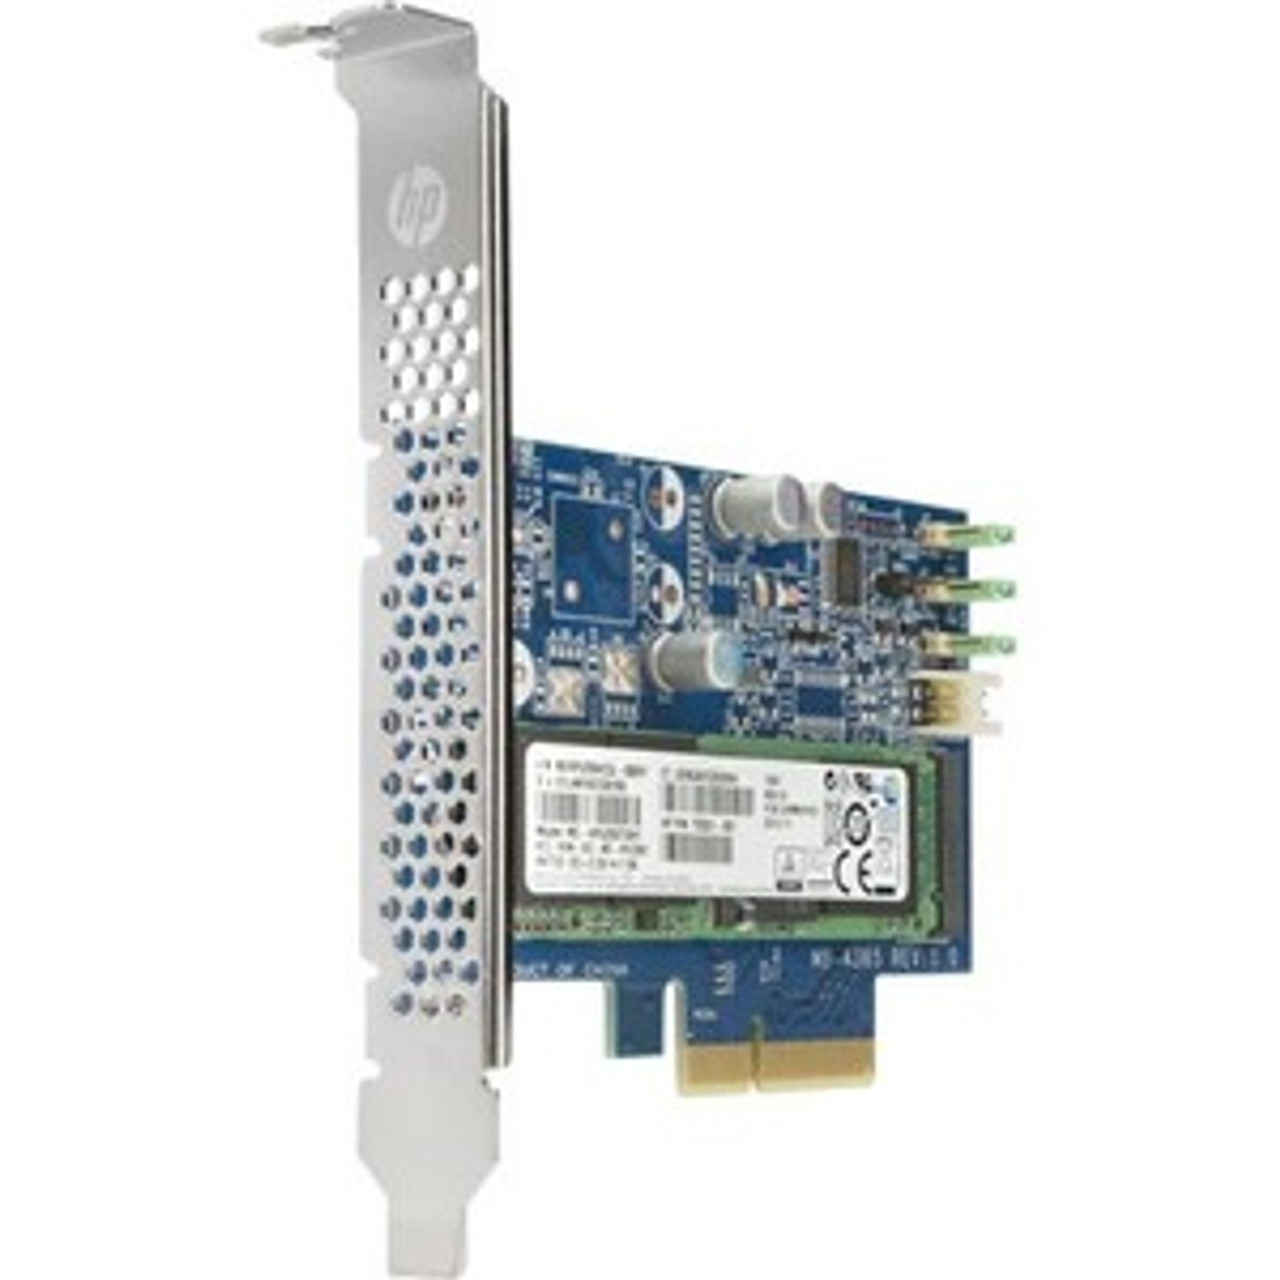 L25108-001 HP Z Turbo Drive 512GB PCI Express 3.0 x4 NVMe M.2 2280 Internal Solid State Drive (SSD)